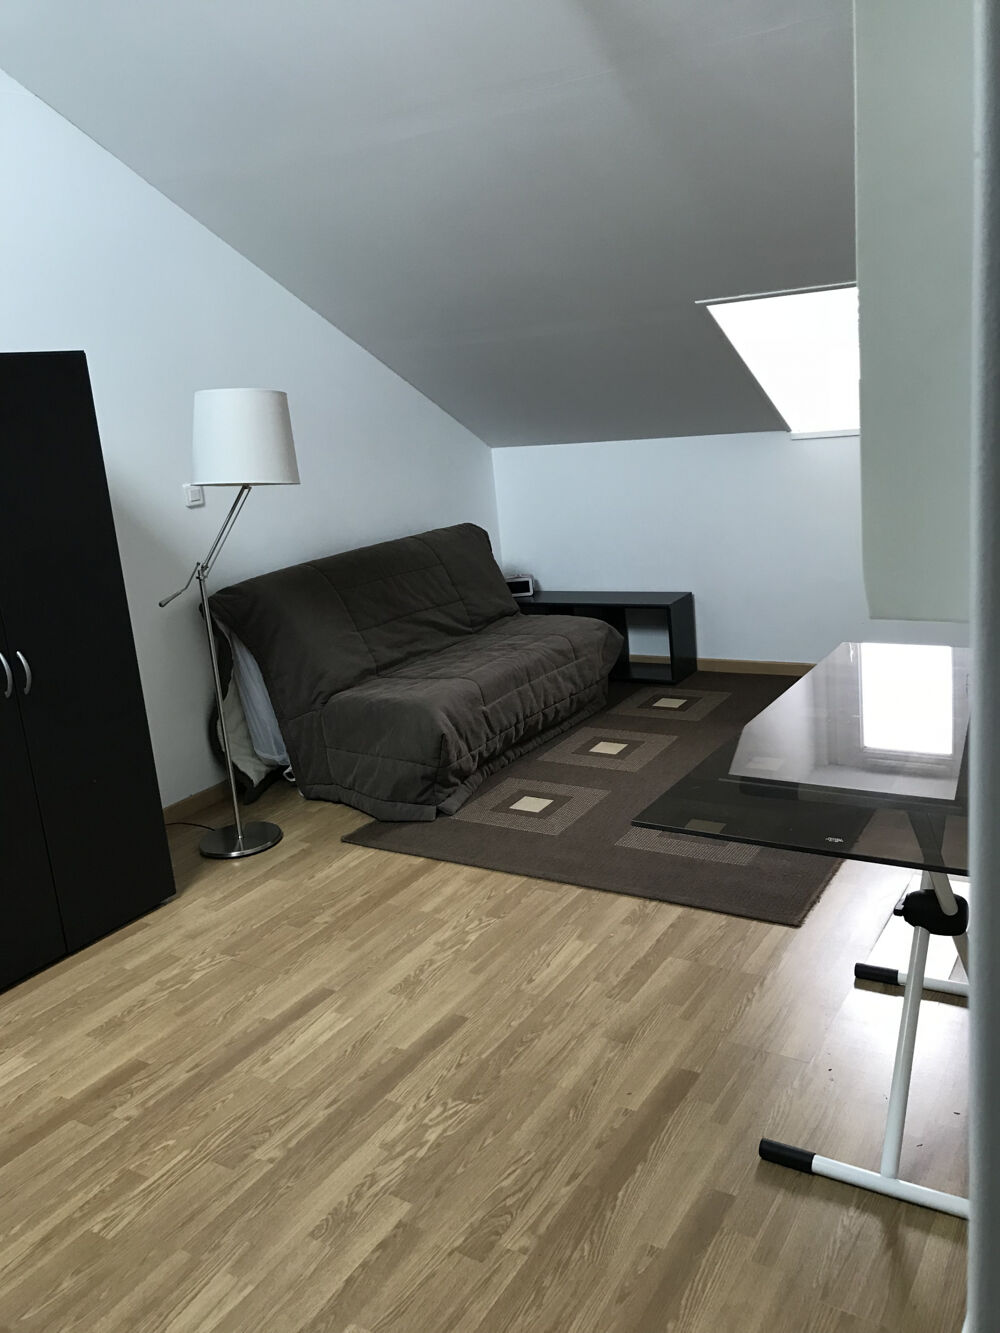 Vente Appartement Studio meubl de 19m2 au premier et dernier tage quartier gare Perigueux